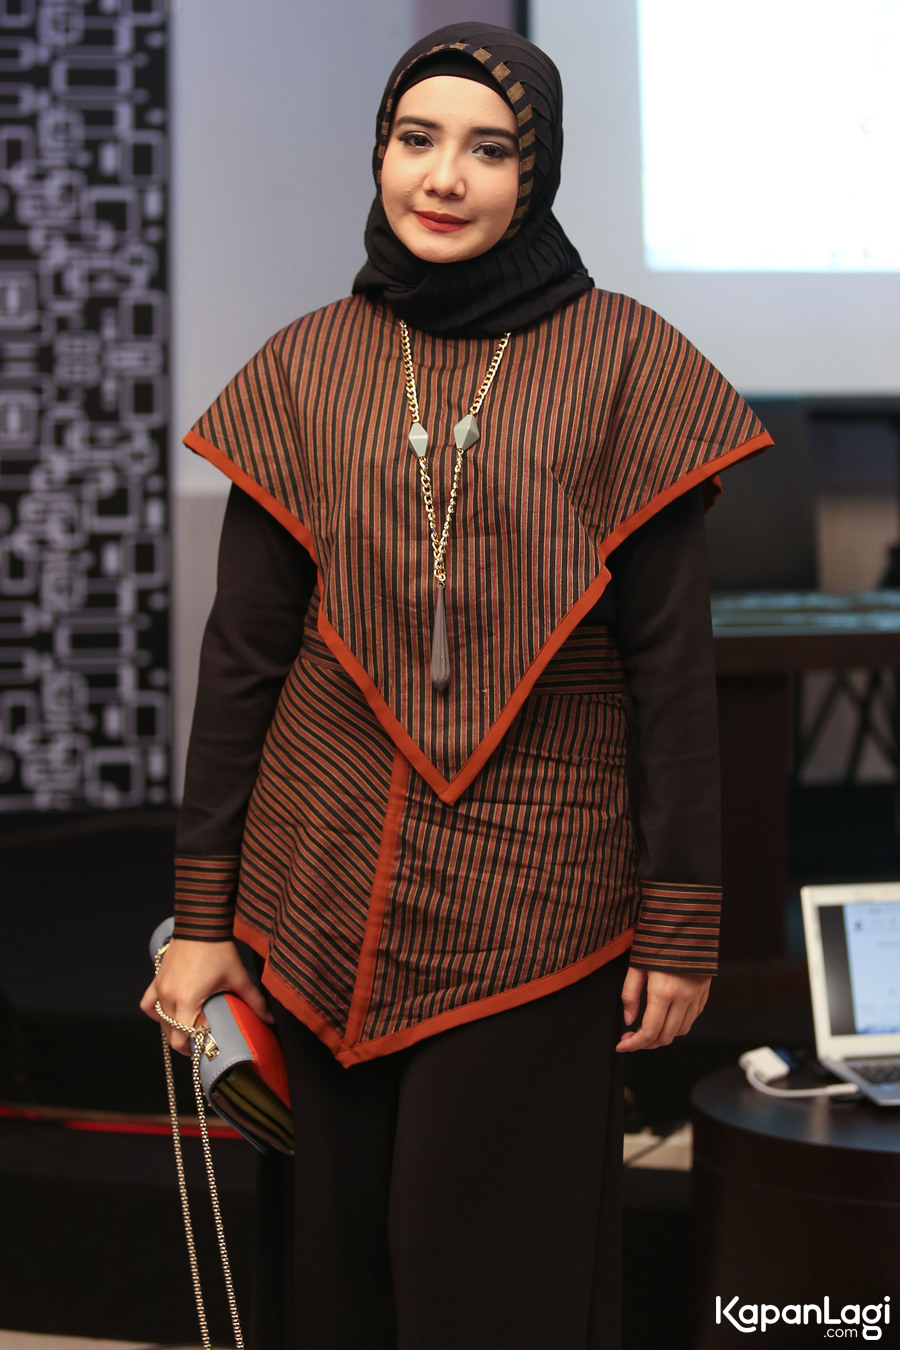 Desain Baju Ala Zaskia Sungkar | Klopdesain